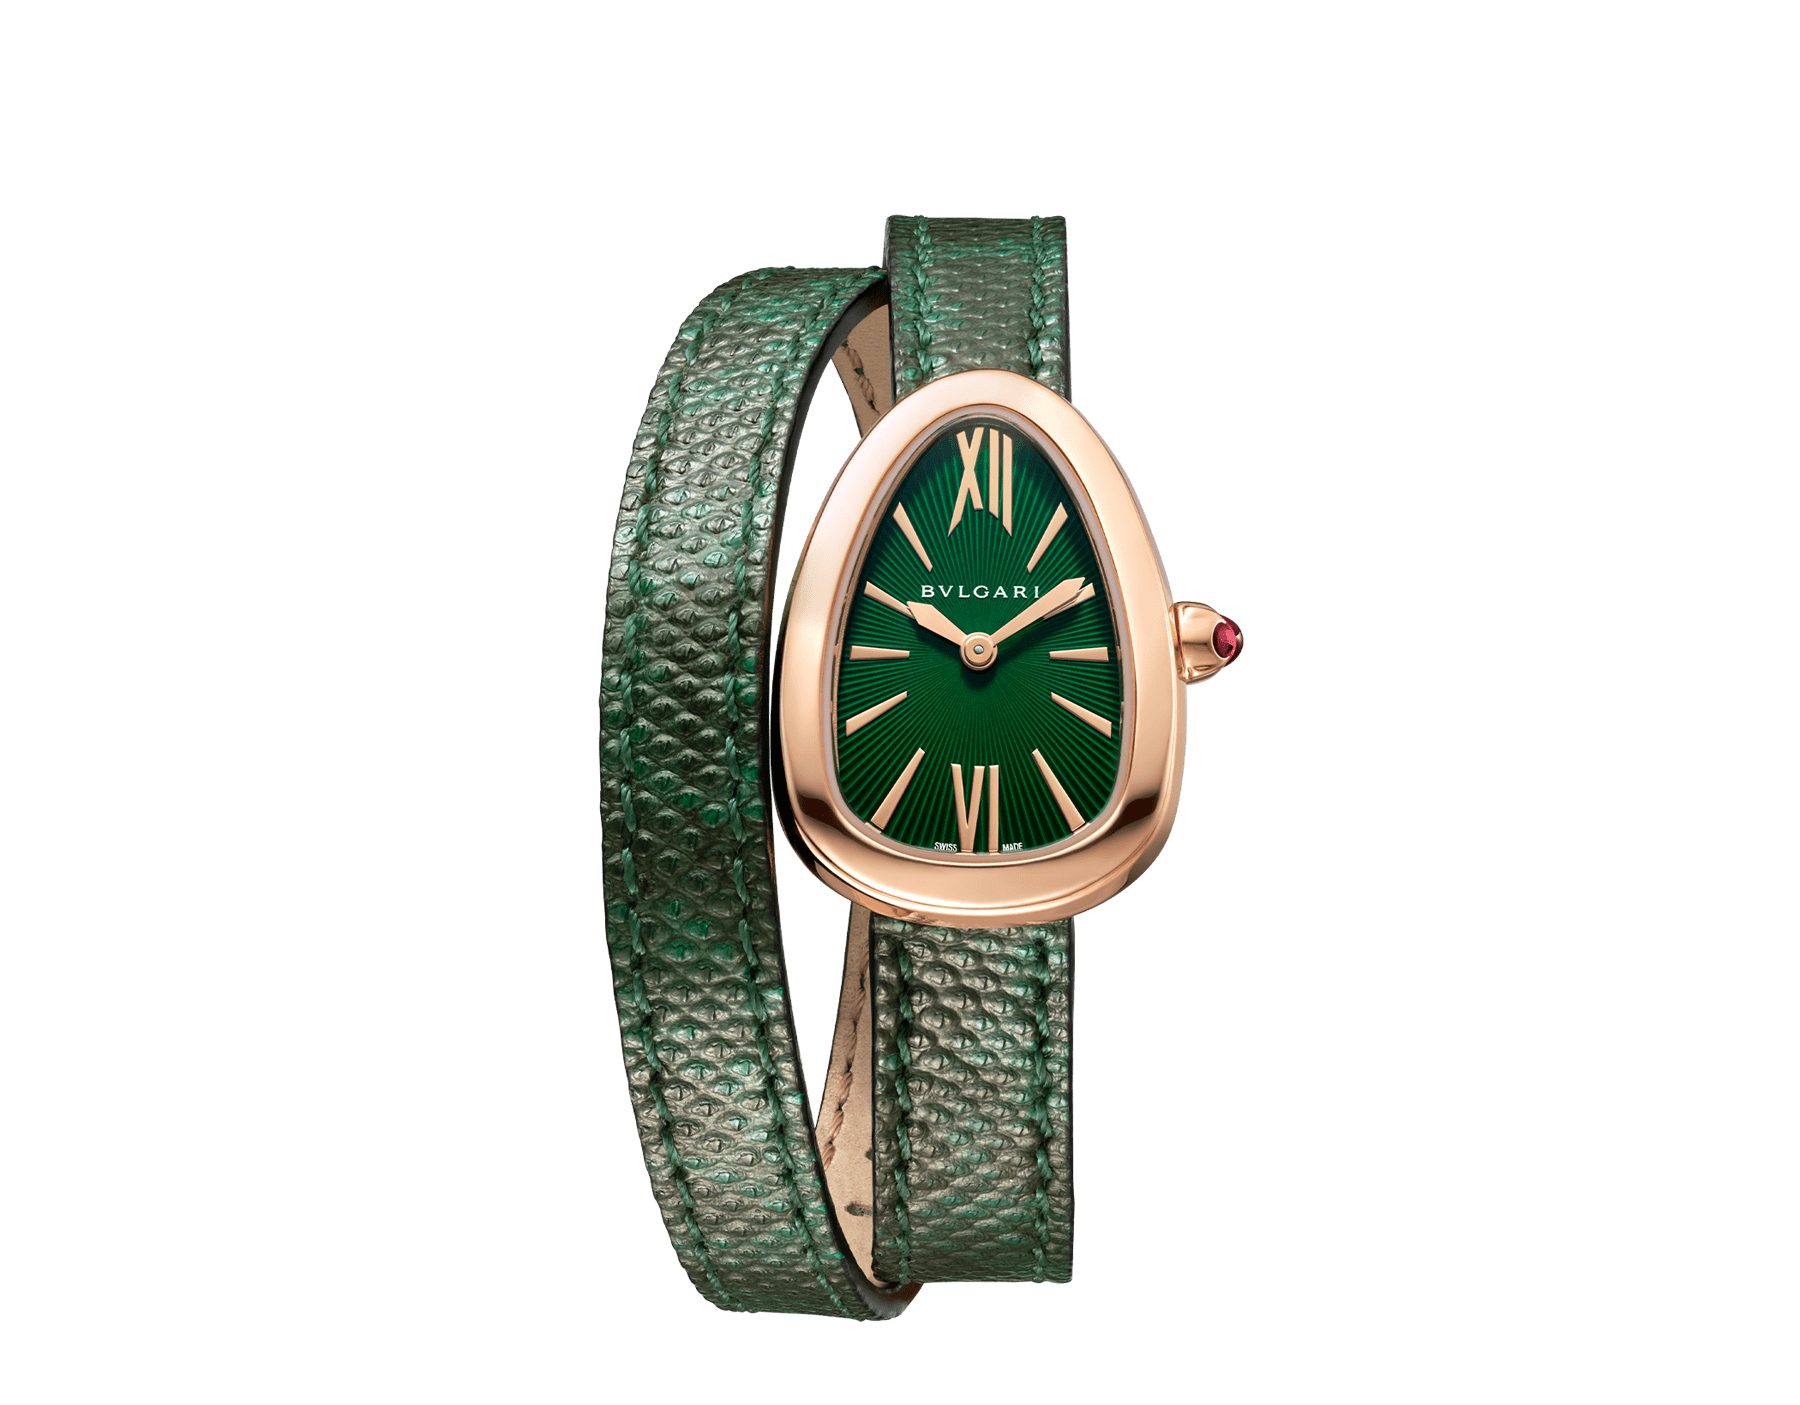 مجلة هي on X: "ساعة من #بولغري ومن علامة #Bvlgari اخترنا لك ساعة يد بدرجات اللون  الأخضر الداكنة المتعددة مع الذهب الوردي حول المينا الداكنة أيضاً  https://t.co/7dAgsC8r8u https://t.co/KRR23MaZUN" / X